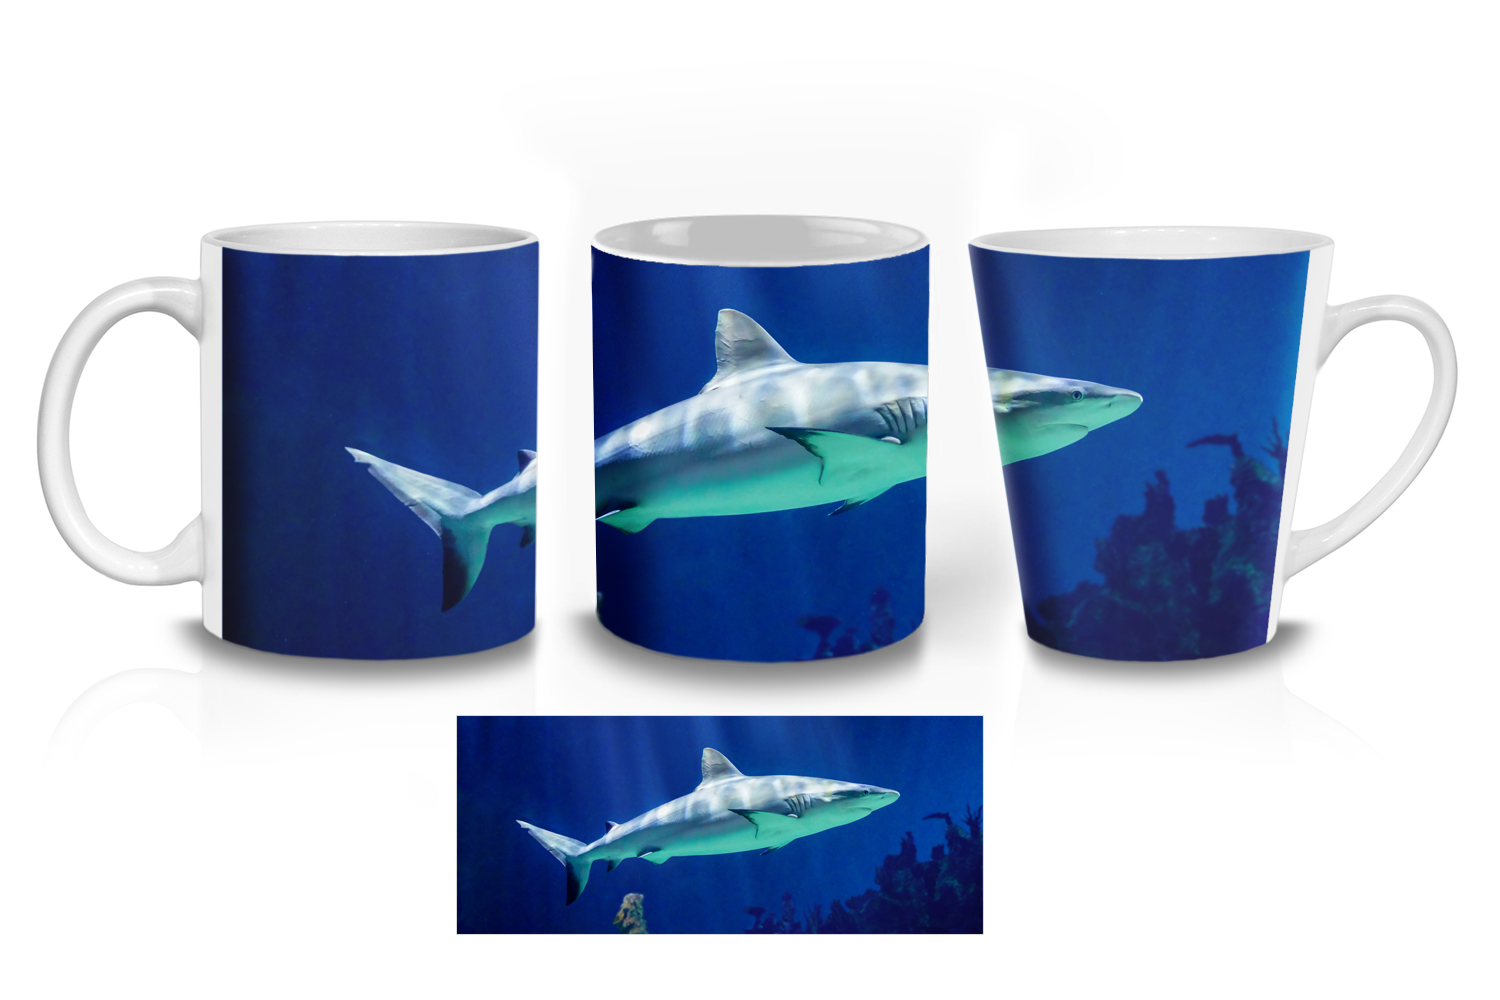 Grey Reef Shark Ceramic Mug Sets